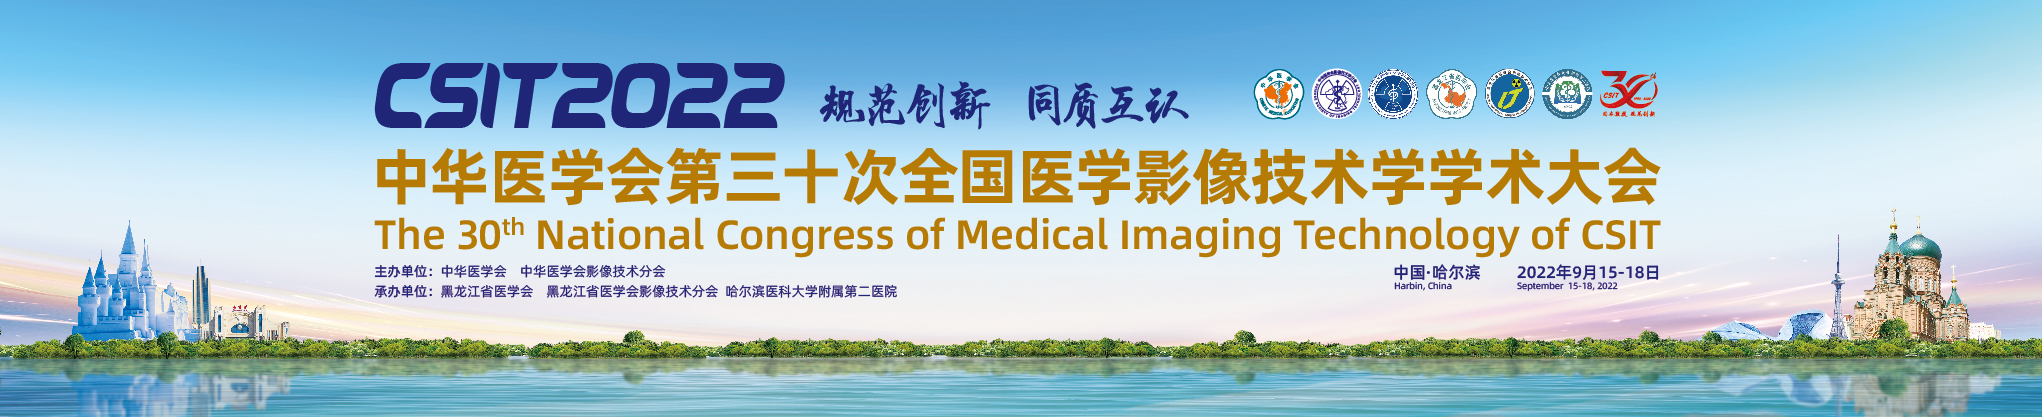 中华医学会第30次全国医学影像技术学学术大会